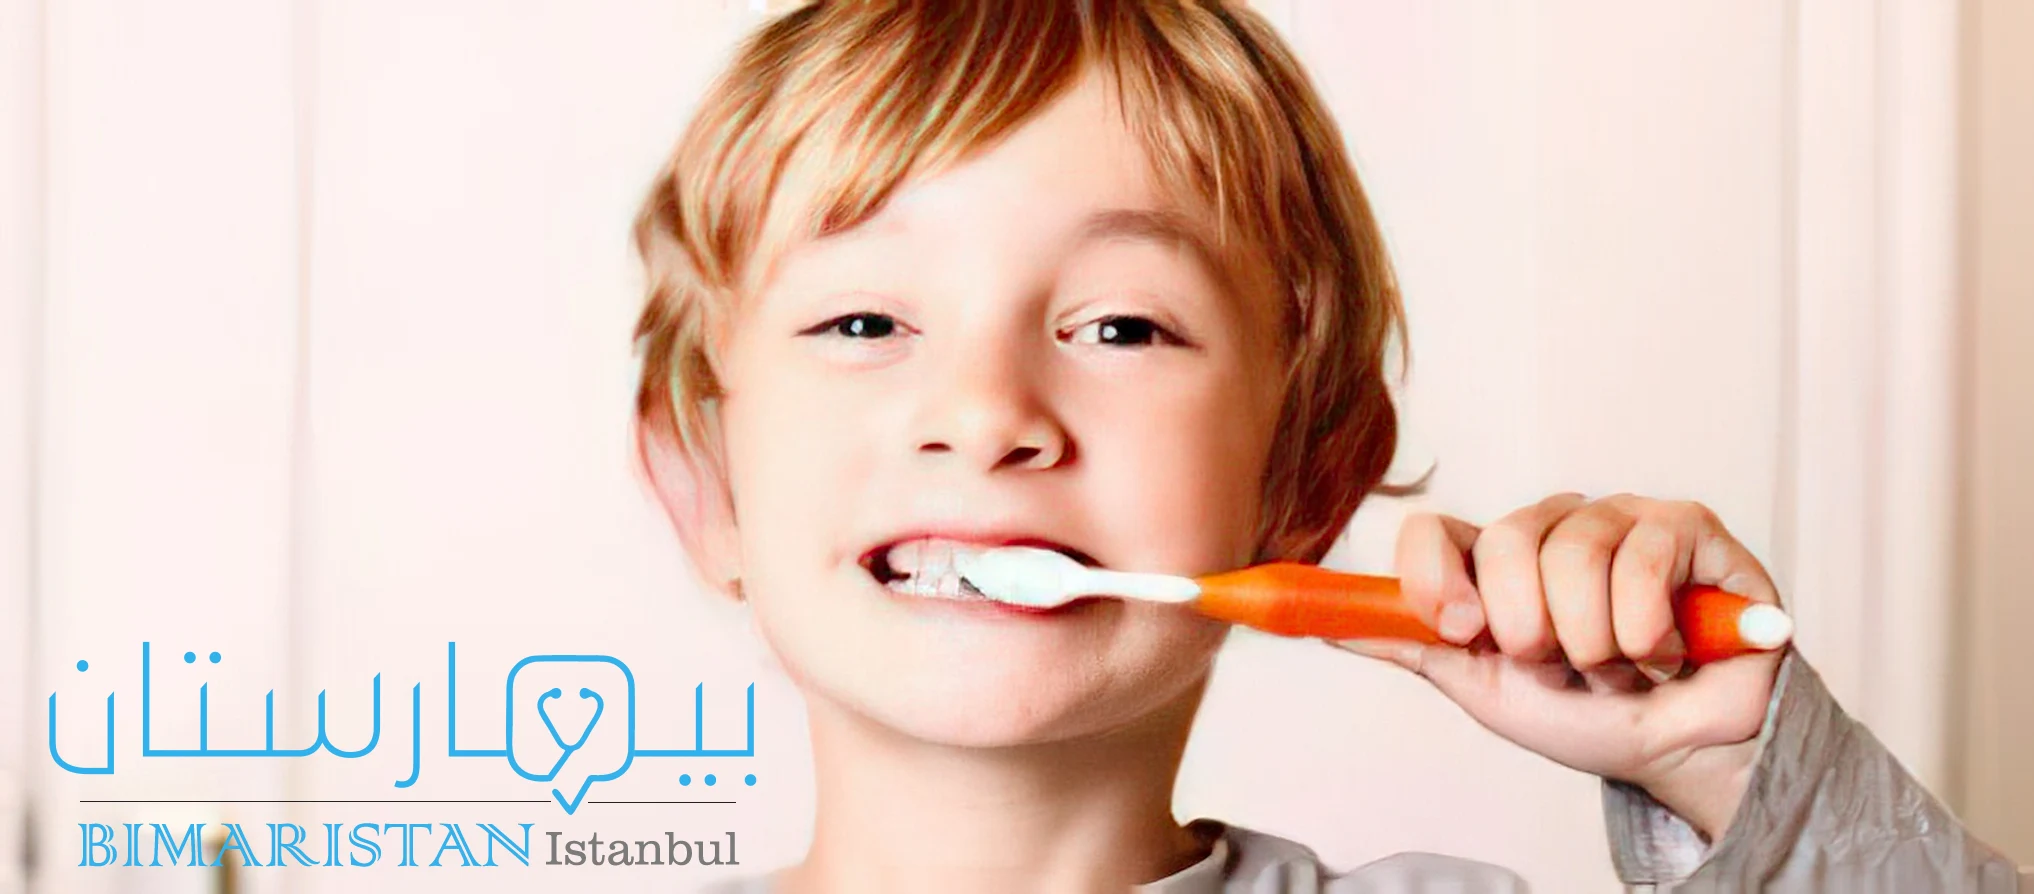 Brushing teeth properly to avoid gum pain